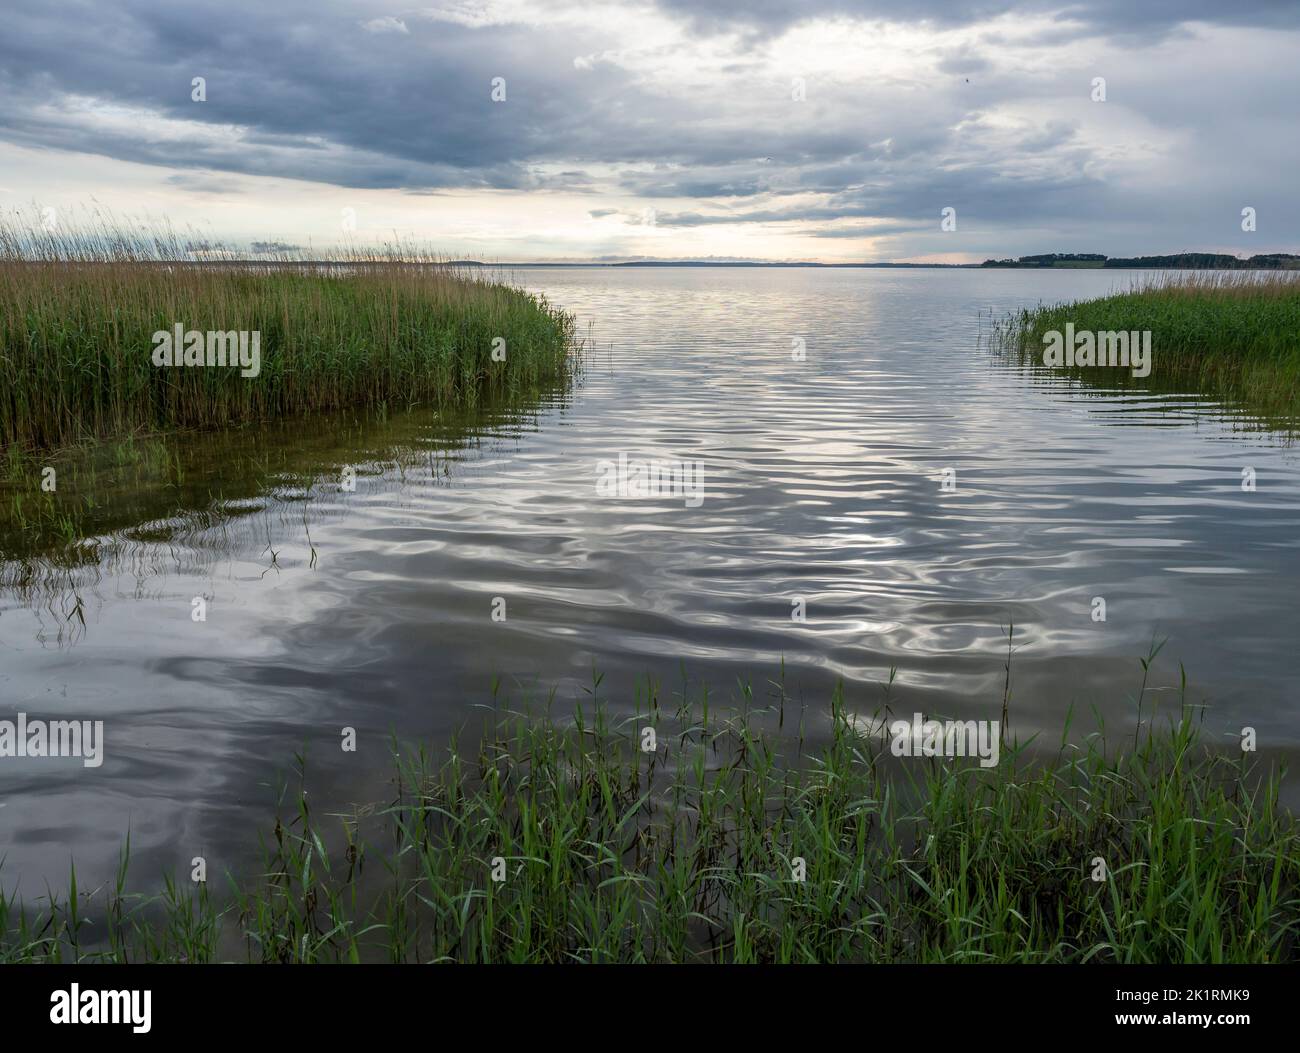 Cintura di canna lungo Achterwasser, isola di Usedom, Mar Baltico, Germania Foto Stock